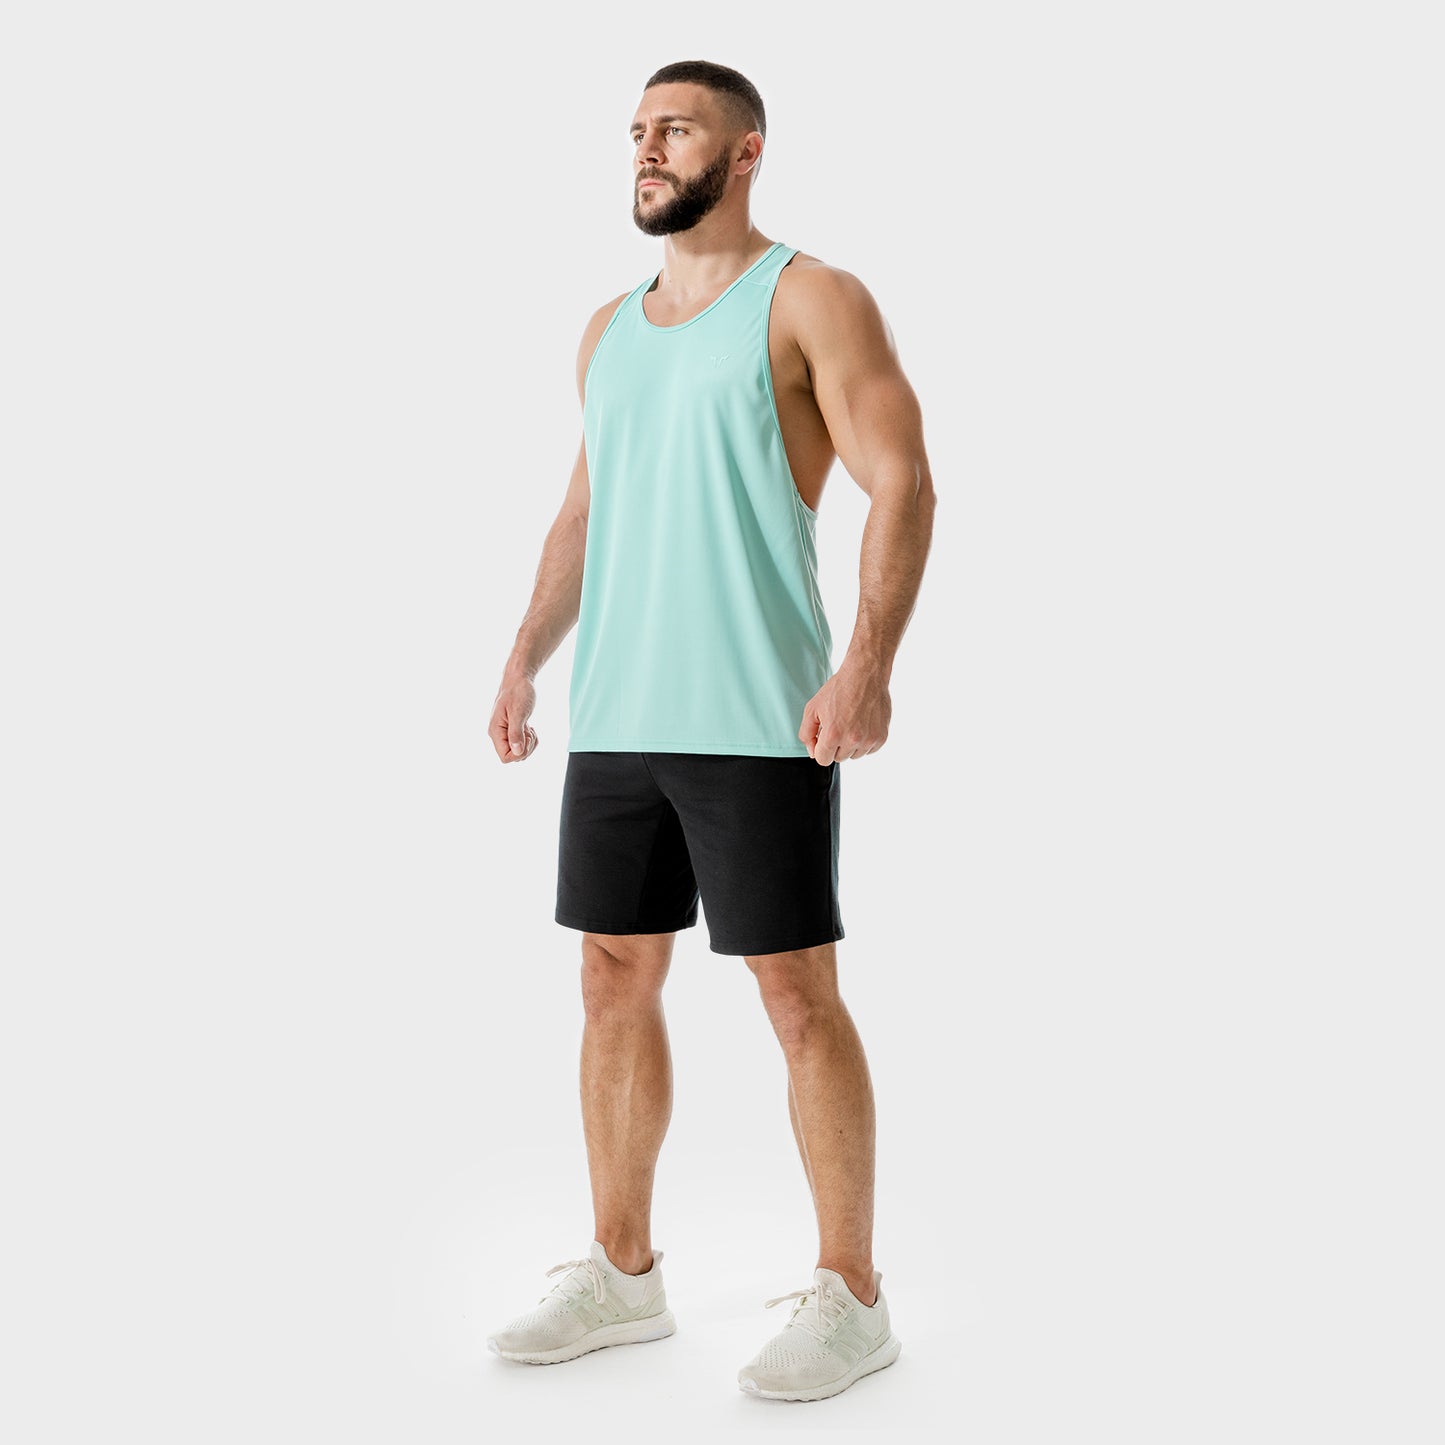 squatwolf-gym-wear-lab-360-weightless-stringer-aqua-stringer-vests-for-men